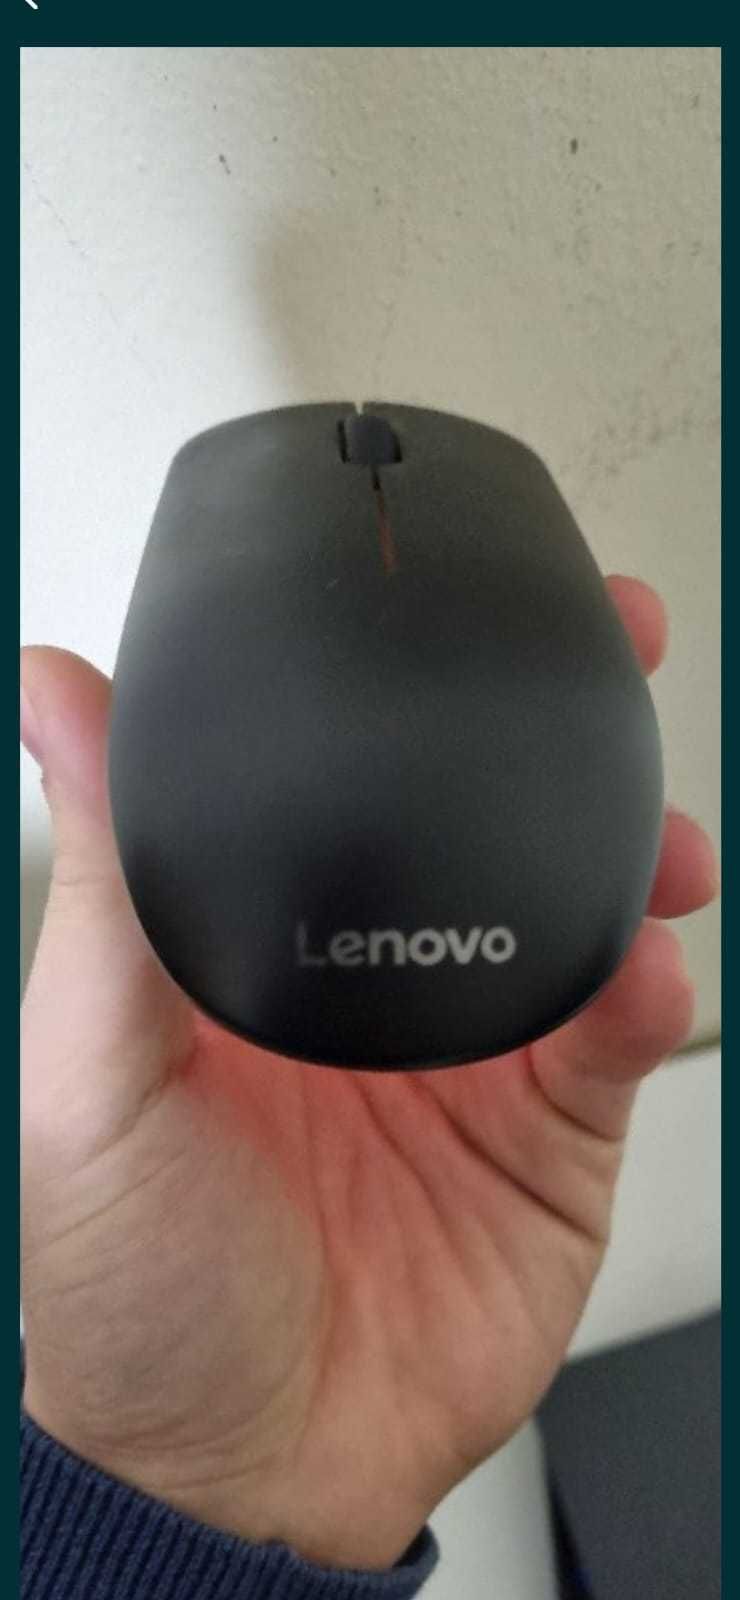 Dockstation e rato Lenovo - como novos